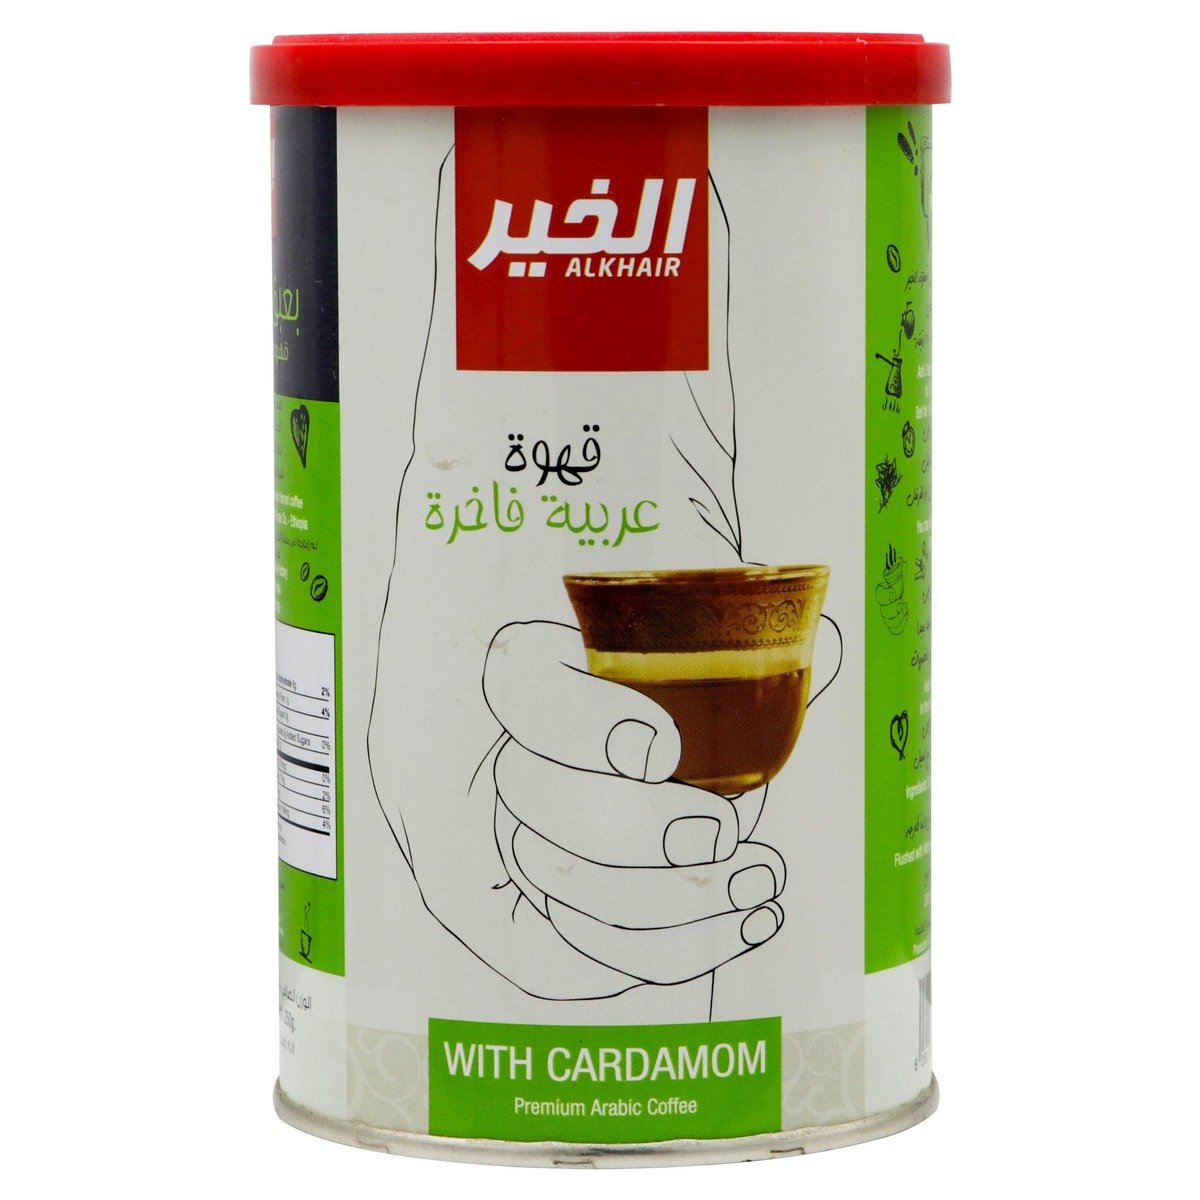 Al Khair Premium Arabic Coffee With Cardamom 250g